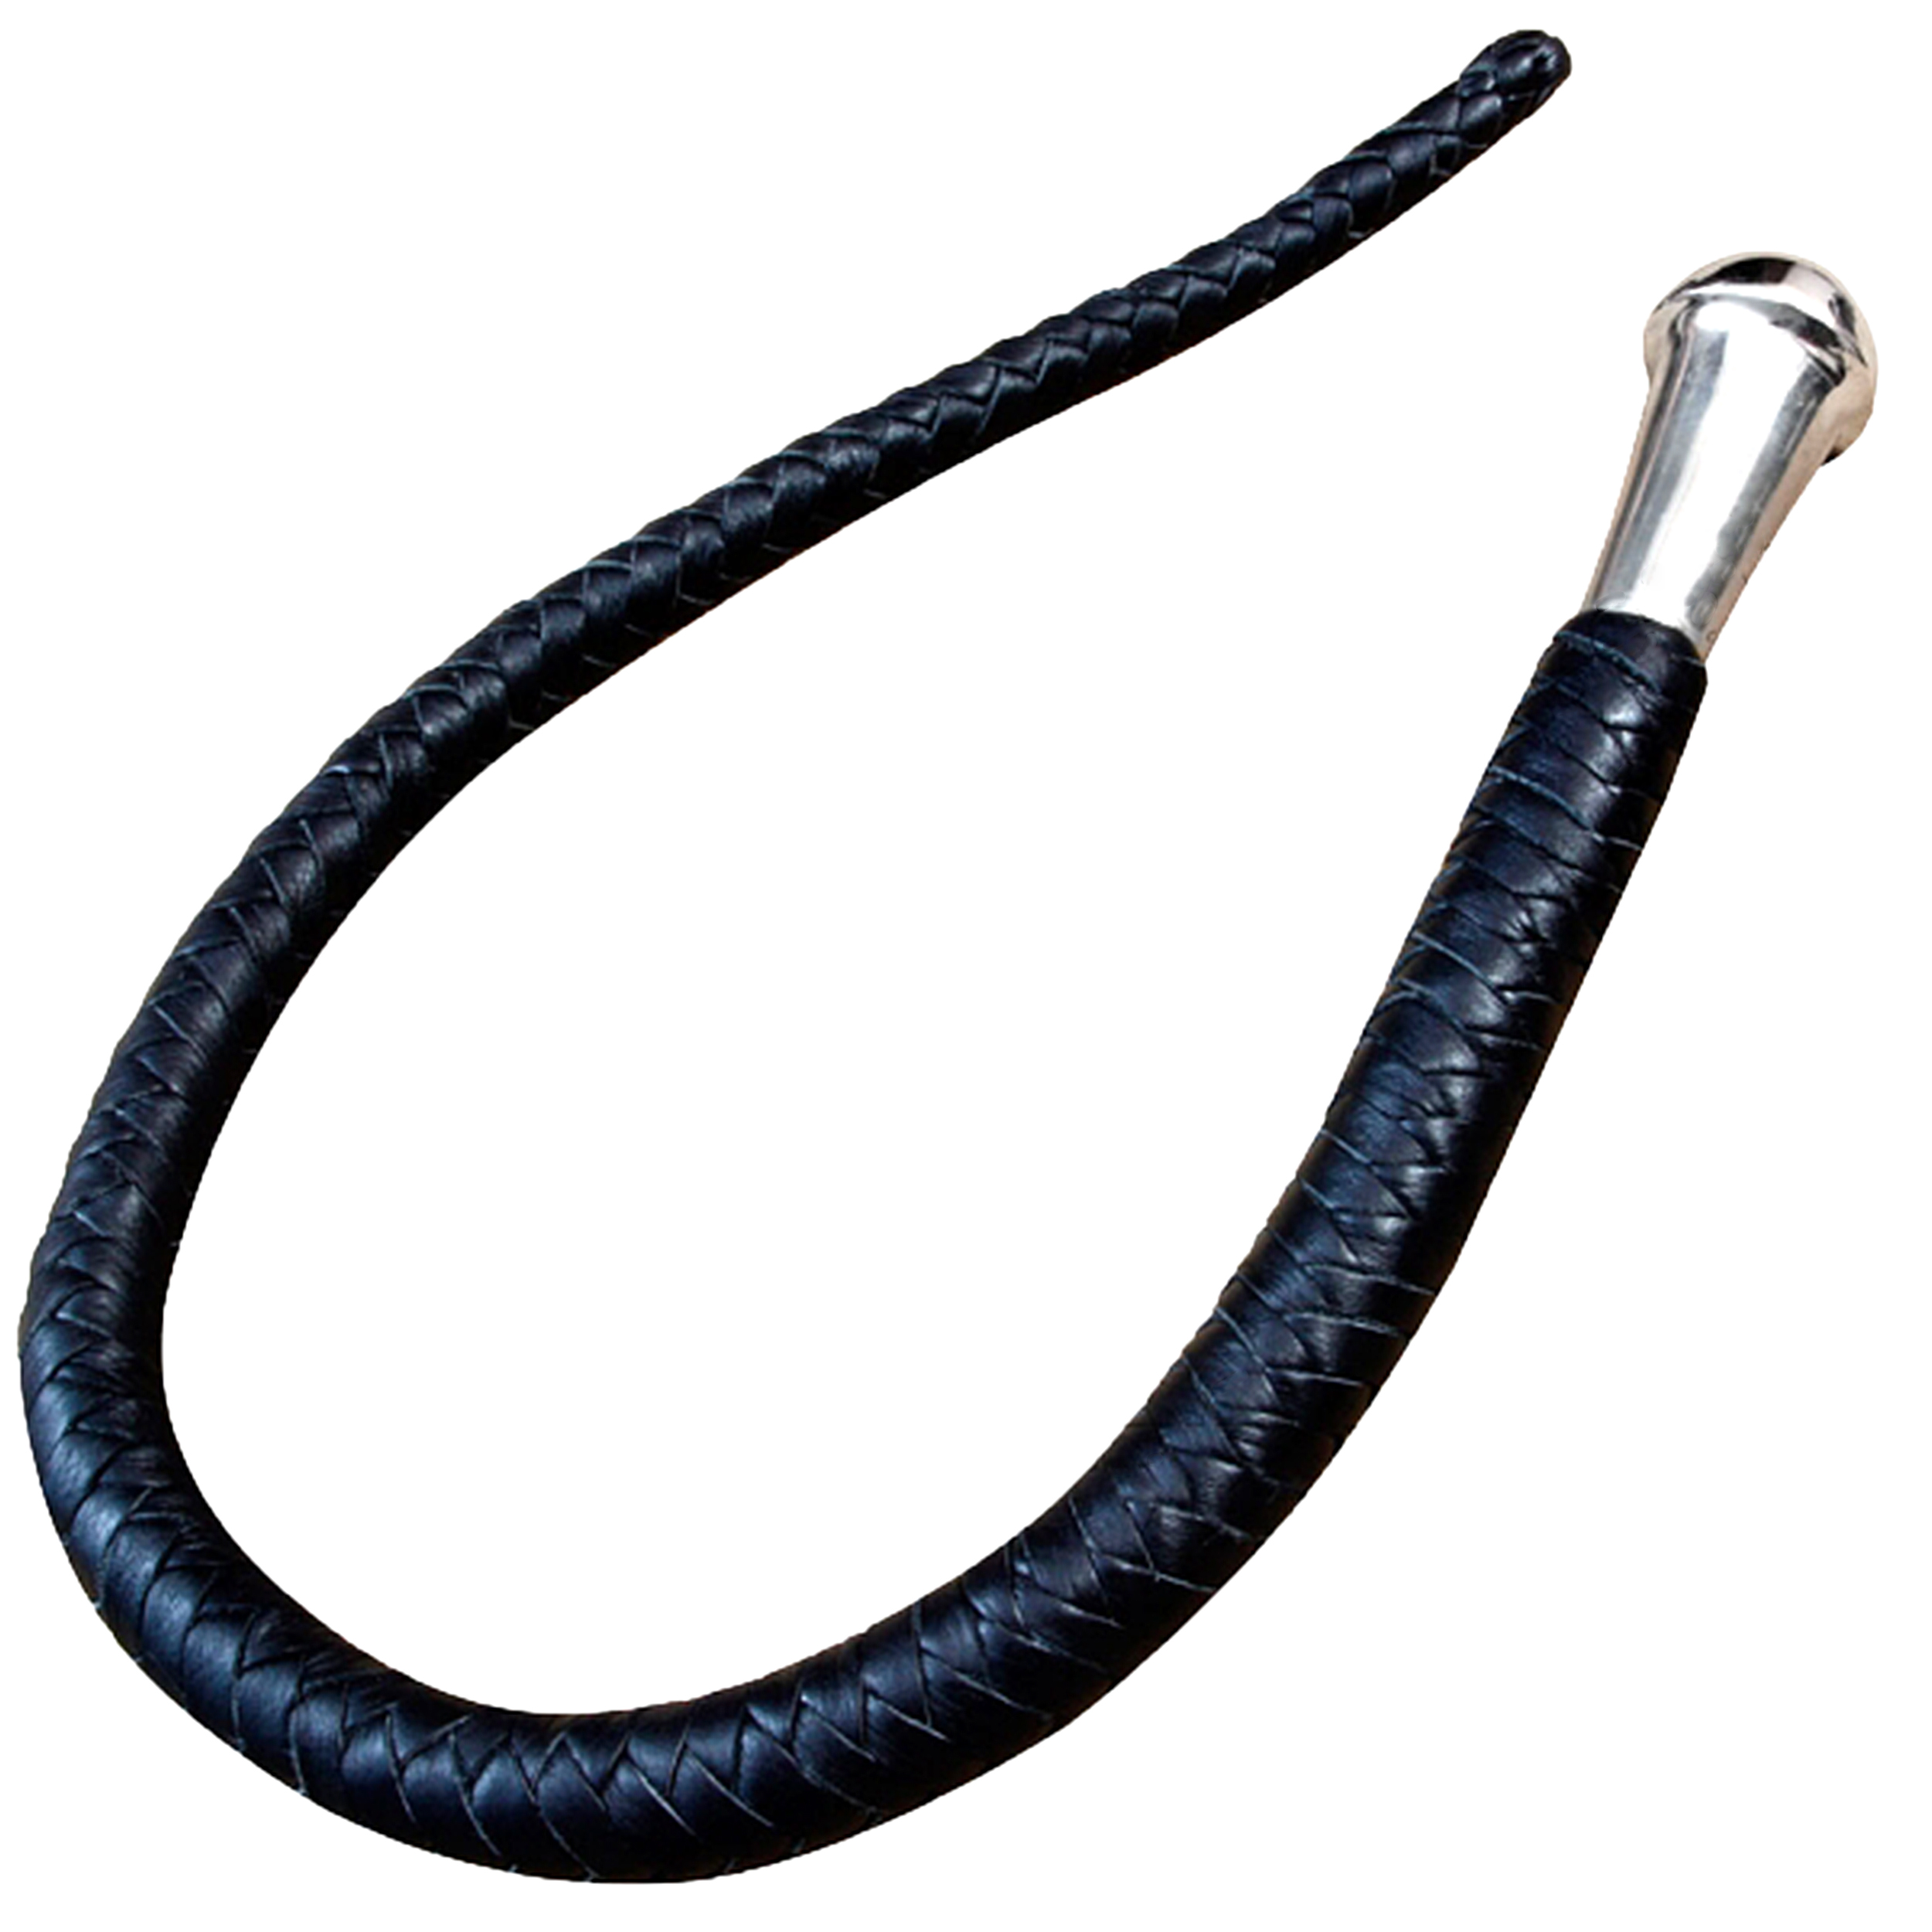 Genuine Leather Bull whip flogger nagayaka volchatka 